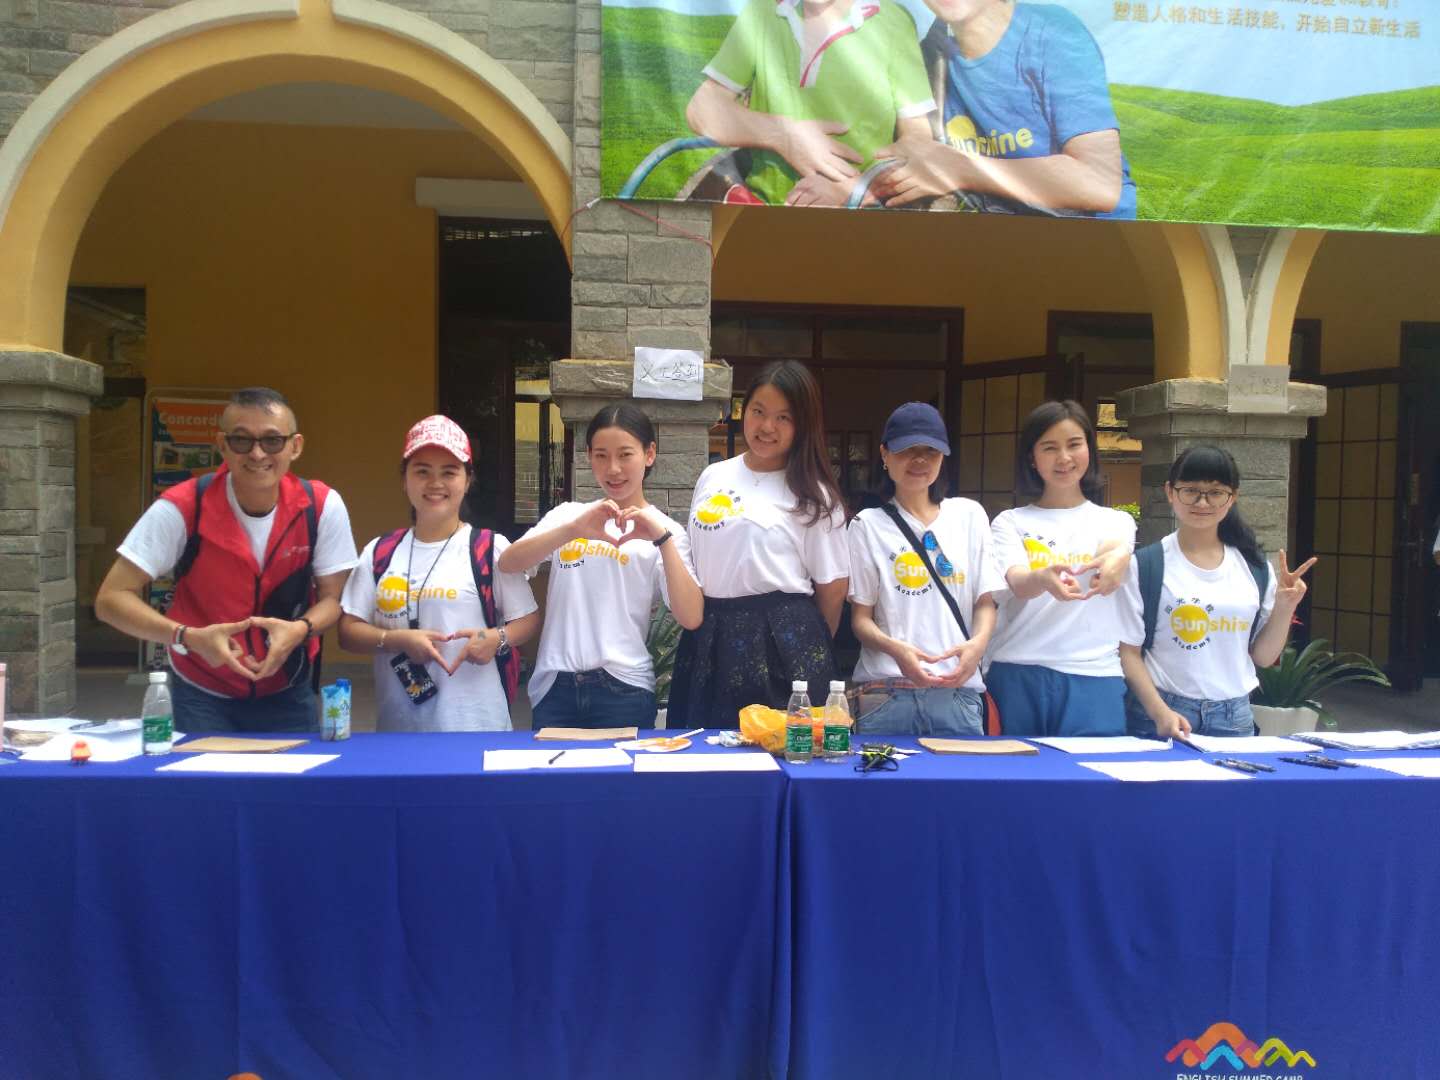 婴童邦团队参与第九届阳光公益游园会爱心公益活动